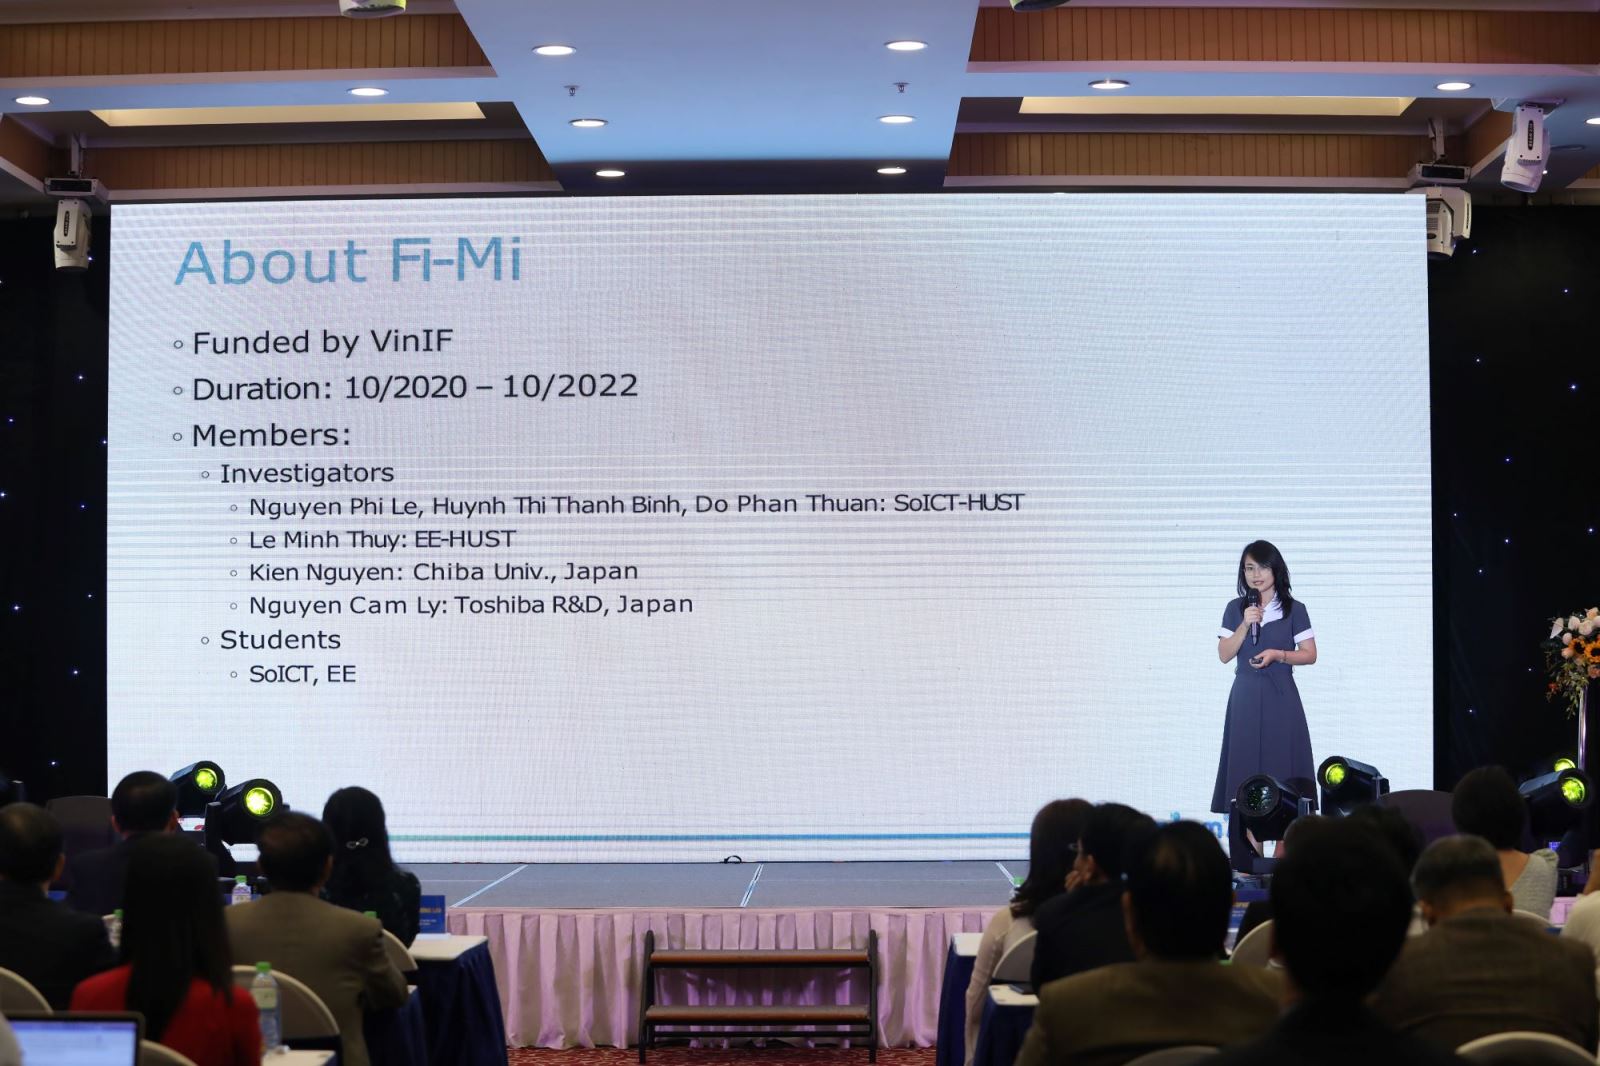 TS. Nguyễn Phi Lê, Chủ nhiệm dự án tiêu biểu được nhận tài trợ của VINIF năm 2020.